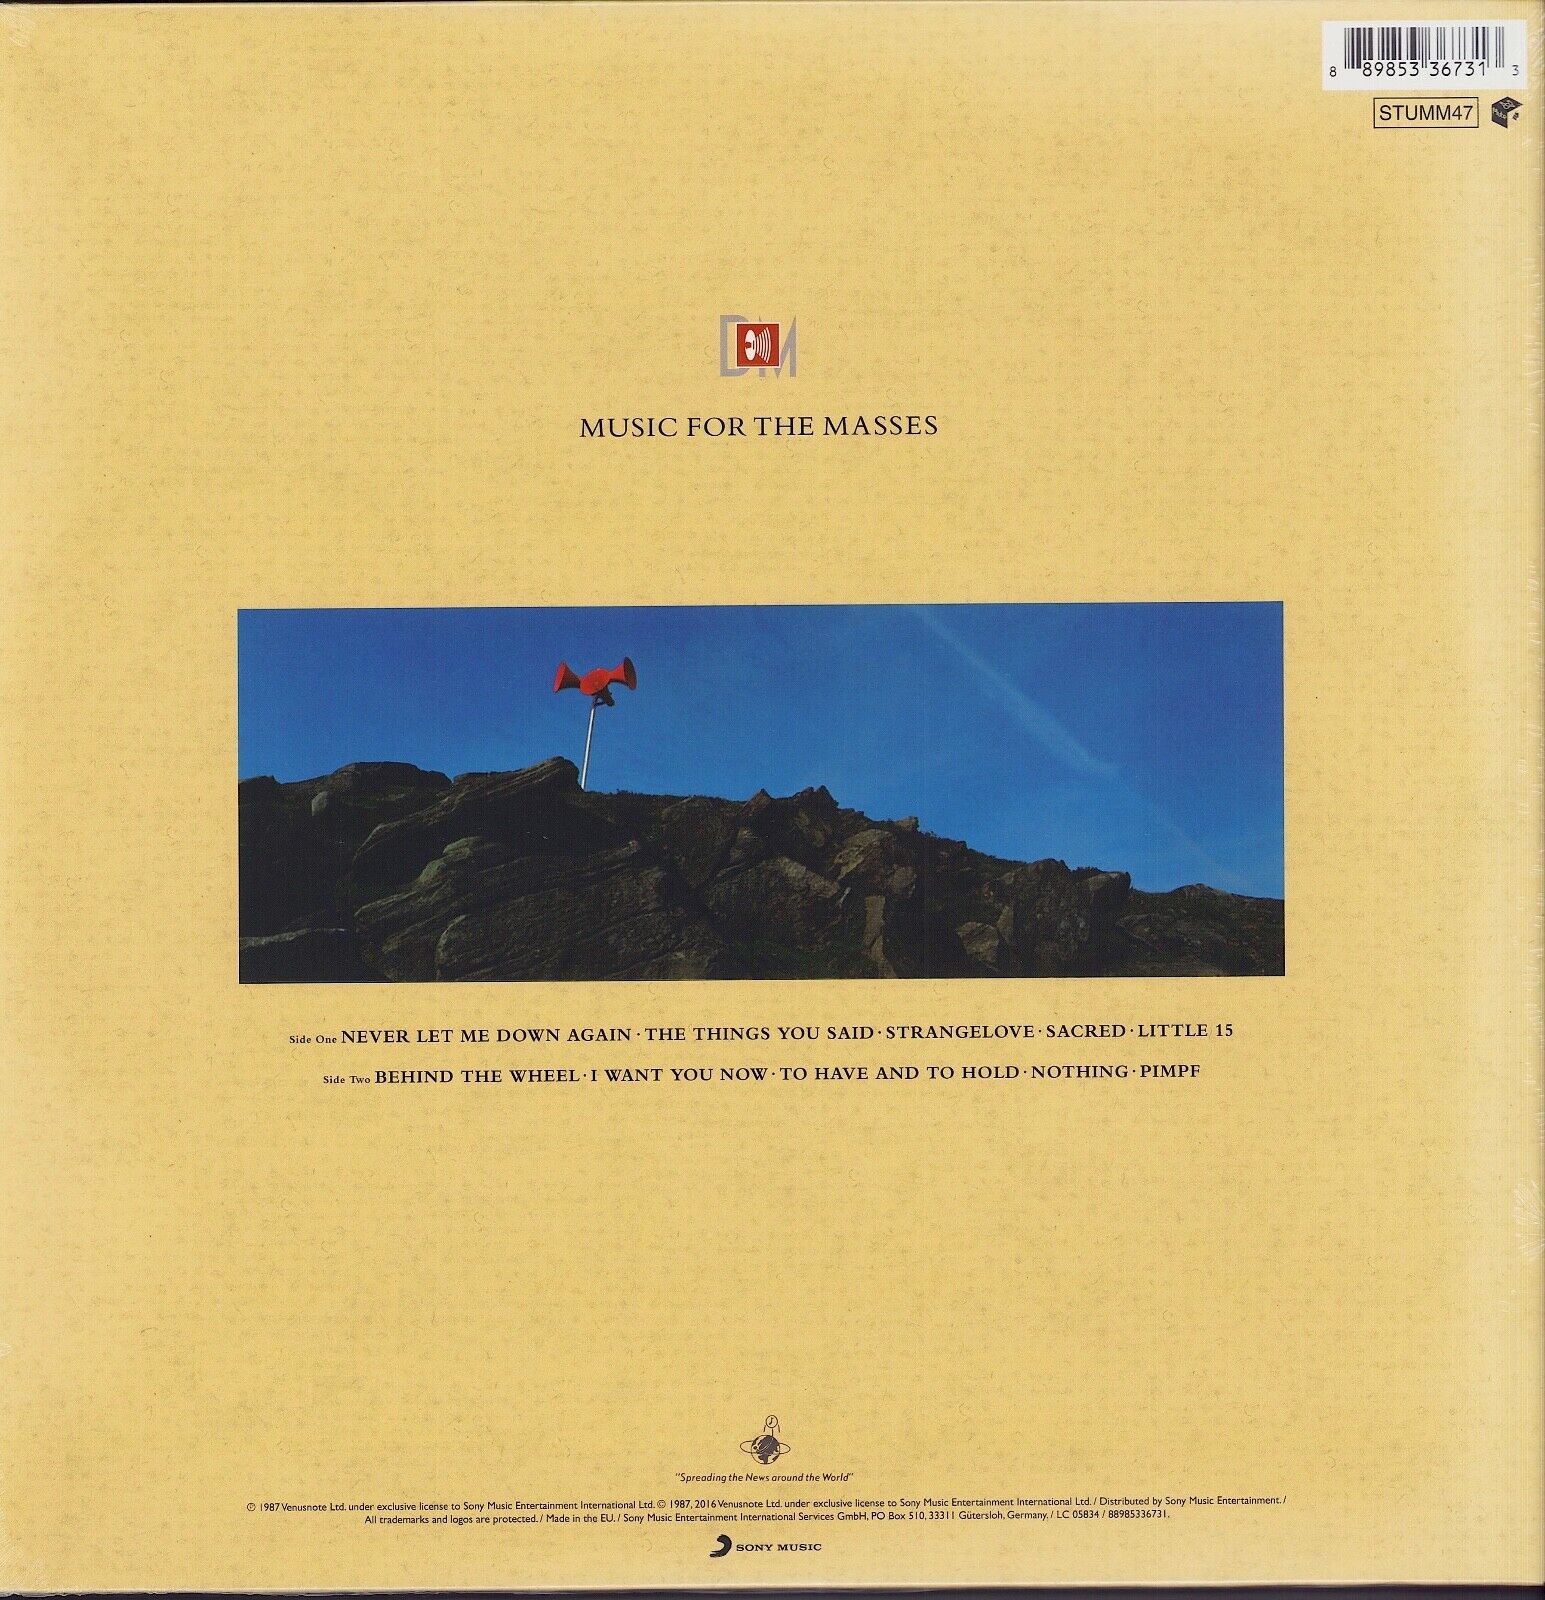 Depeche Mode - Music For The Masses Vinyl LP